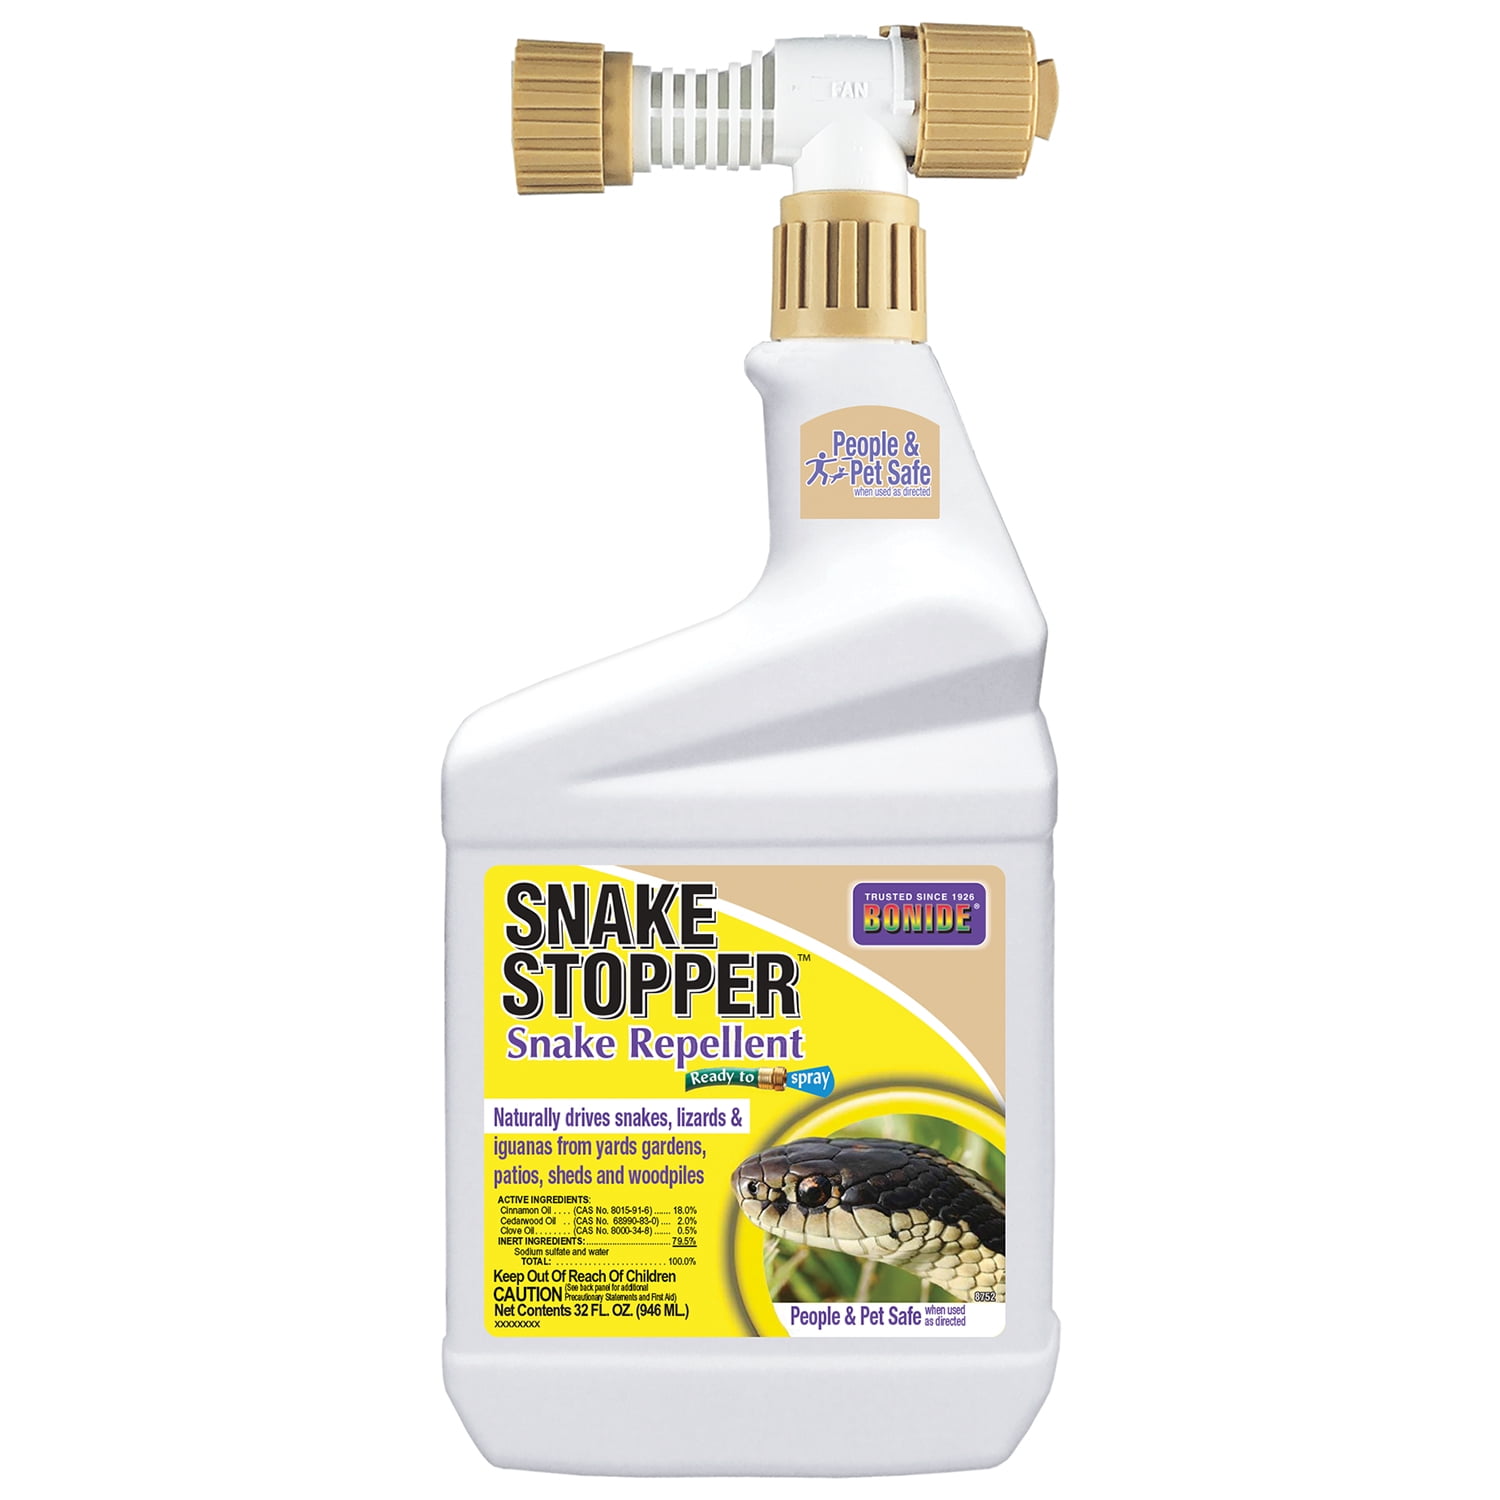 Bonide 87526 Snake Stopper Snake Repellent, 32 oz Ready-to-Spray, Deter Snakes from Yard